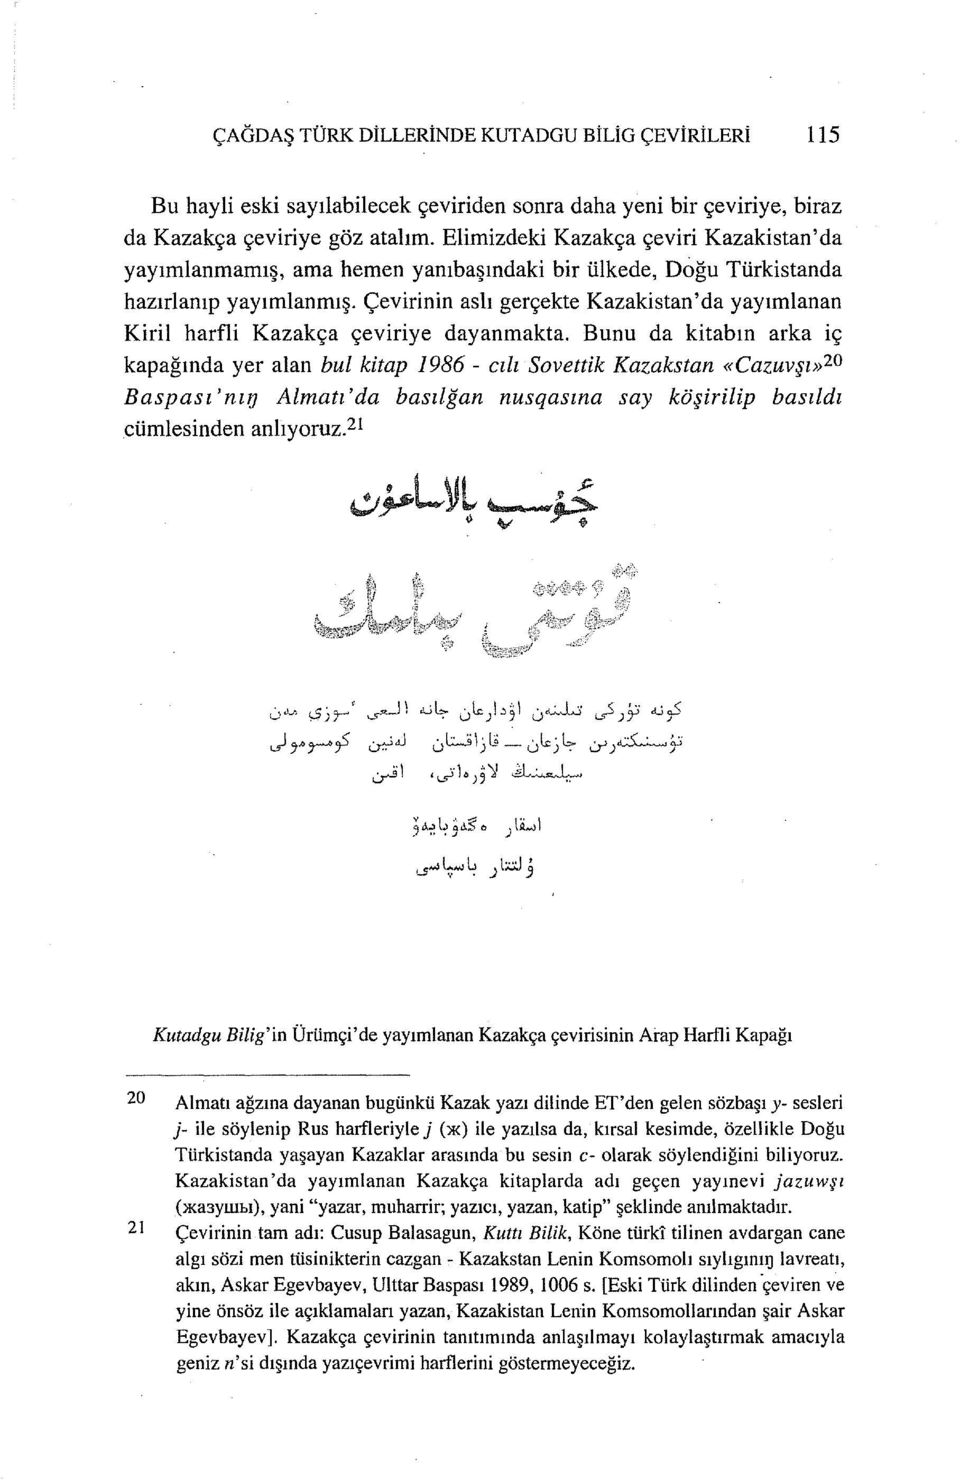 çevirinin aslı gerçekte Kazakistan'da yayımlanan Kiril harfli Kazakça çeviriye dayanmakta.